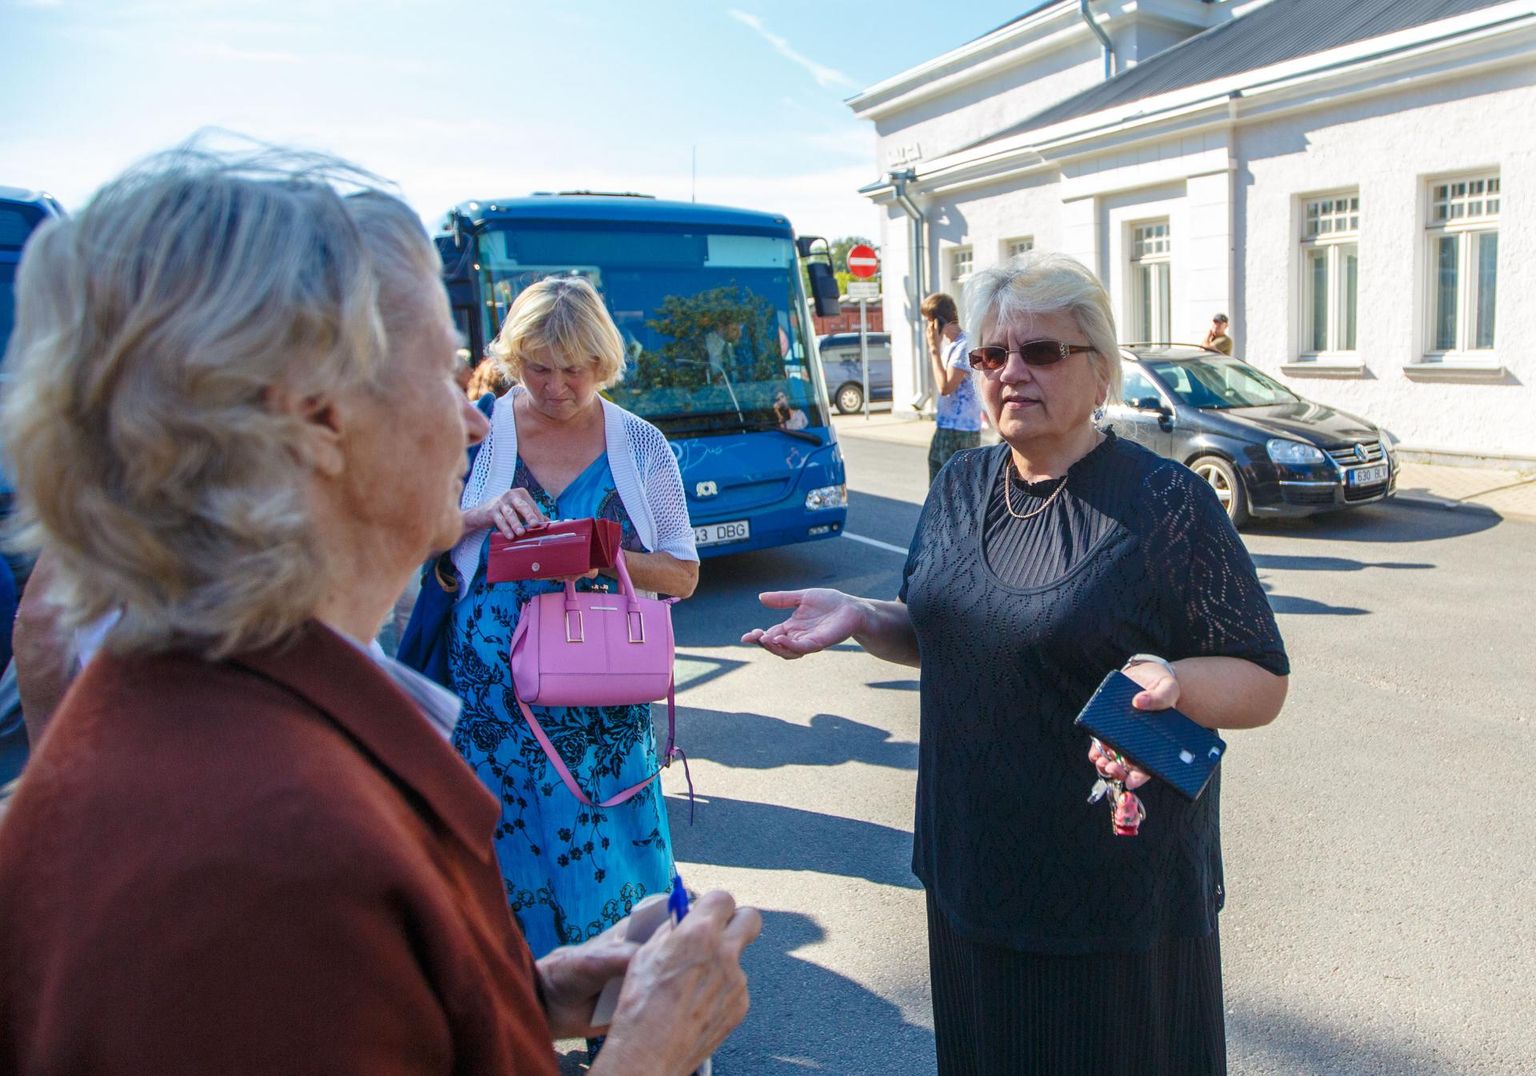 Valgamaa ühistranspordikeskuse tegevjuht Liia Rätsep (paremal) tõdes, et praegu on hea, kui vedajad pankrotti ei lähe. Pilt on tehtud mõne aasta tagusel busside esitlusel.